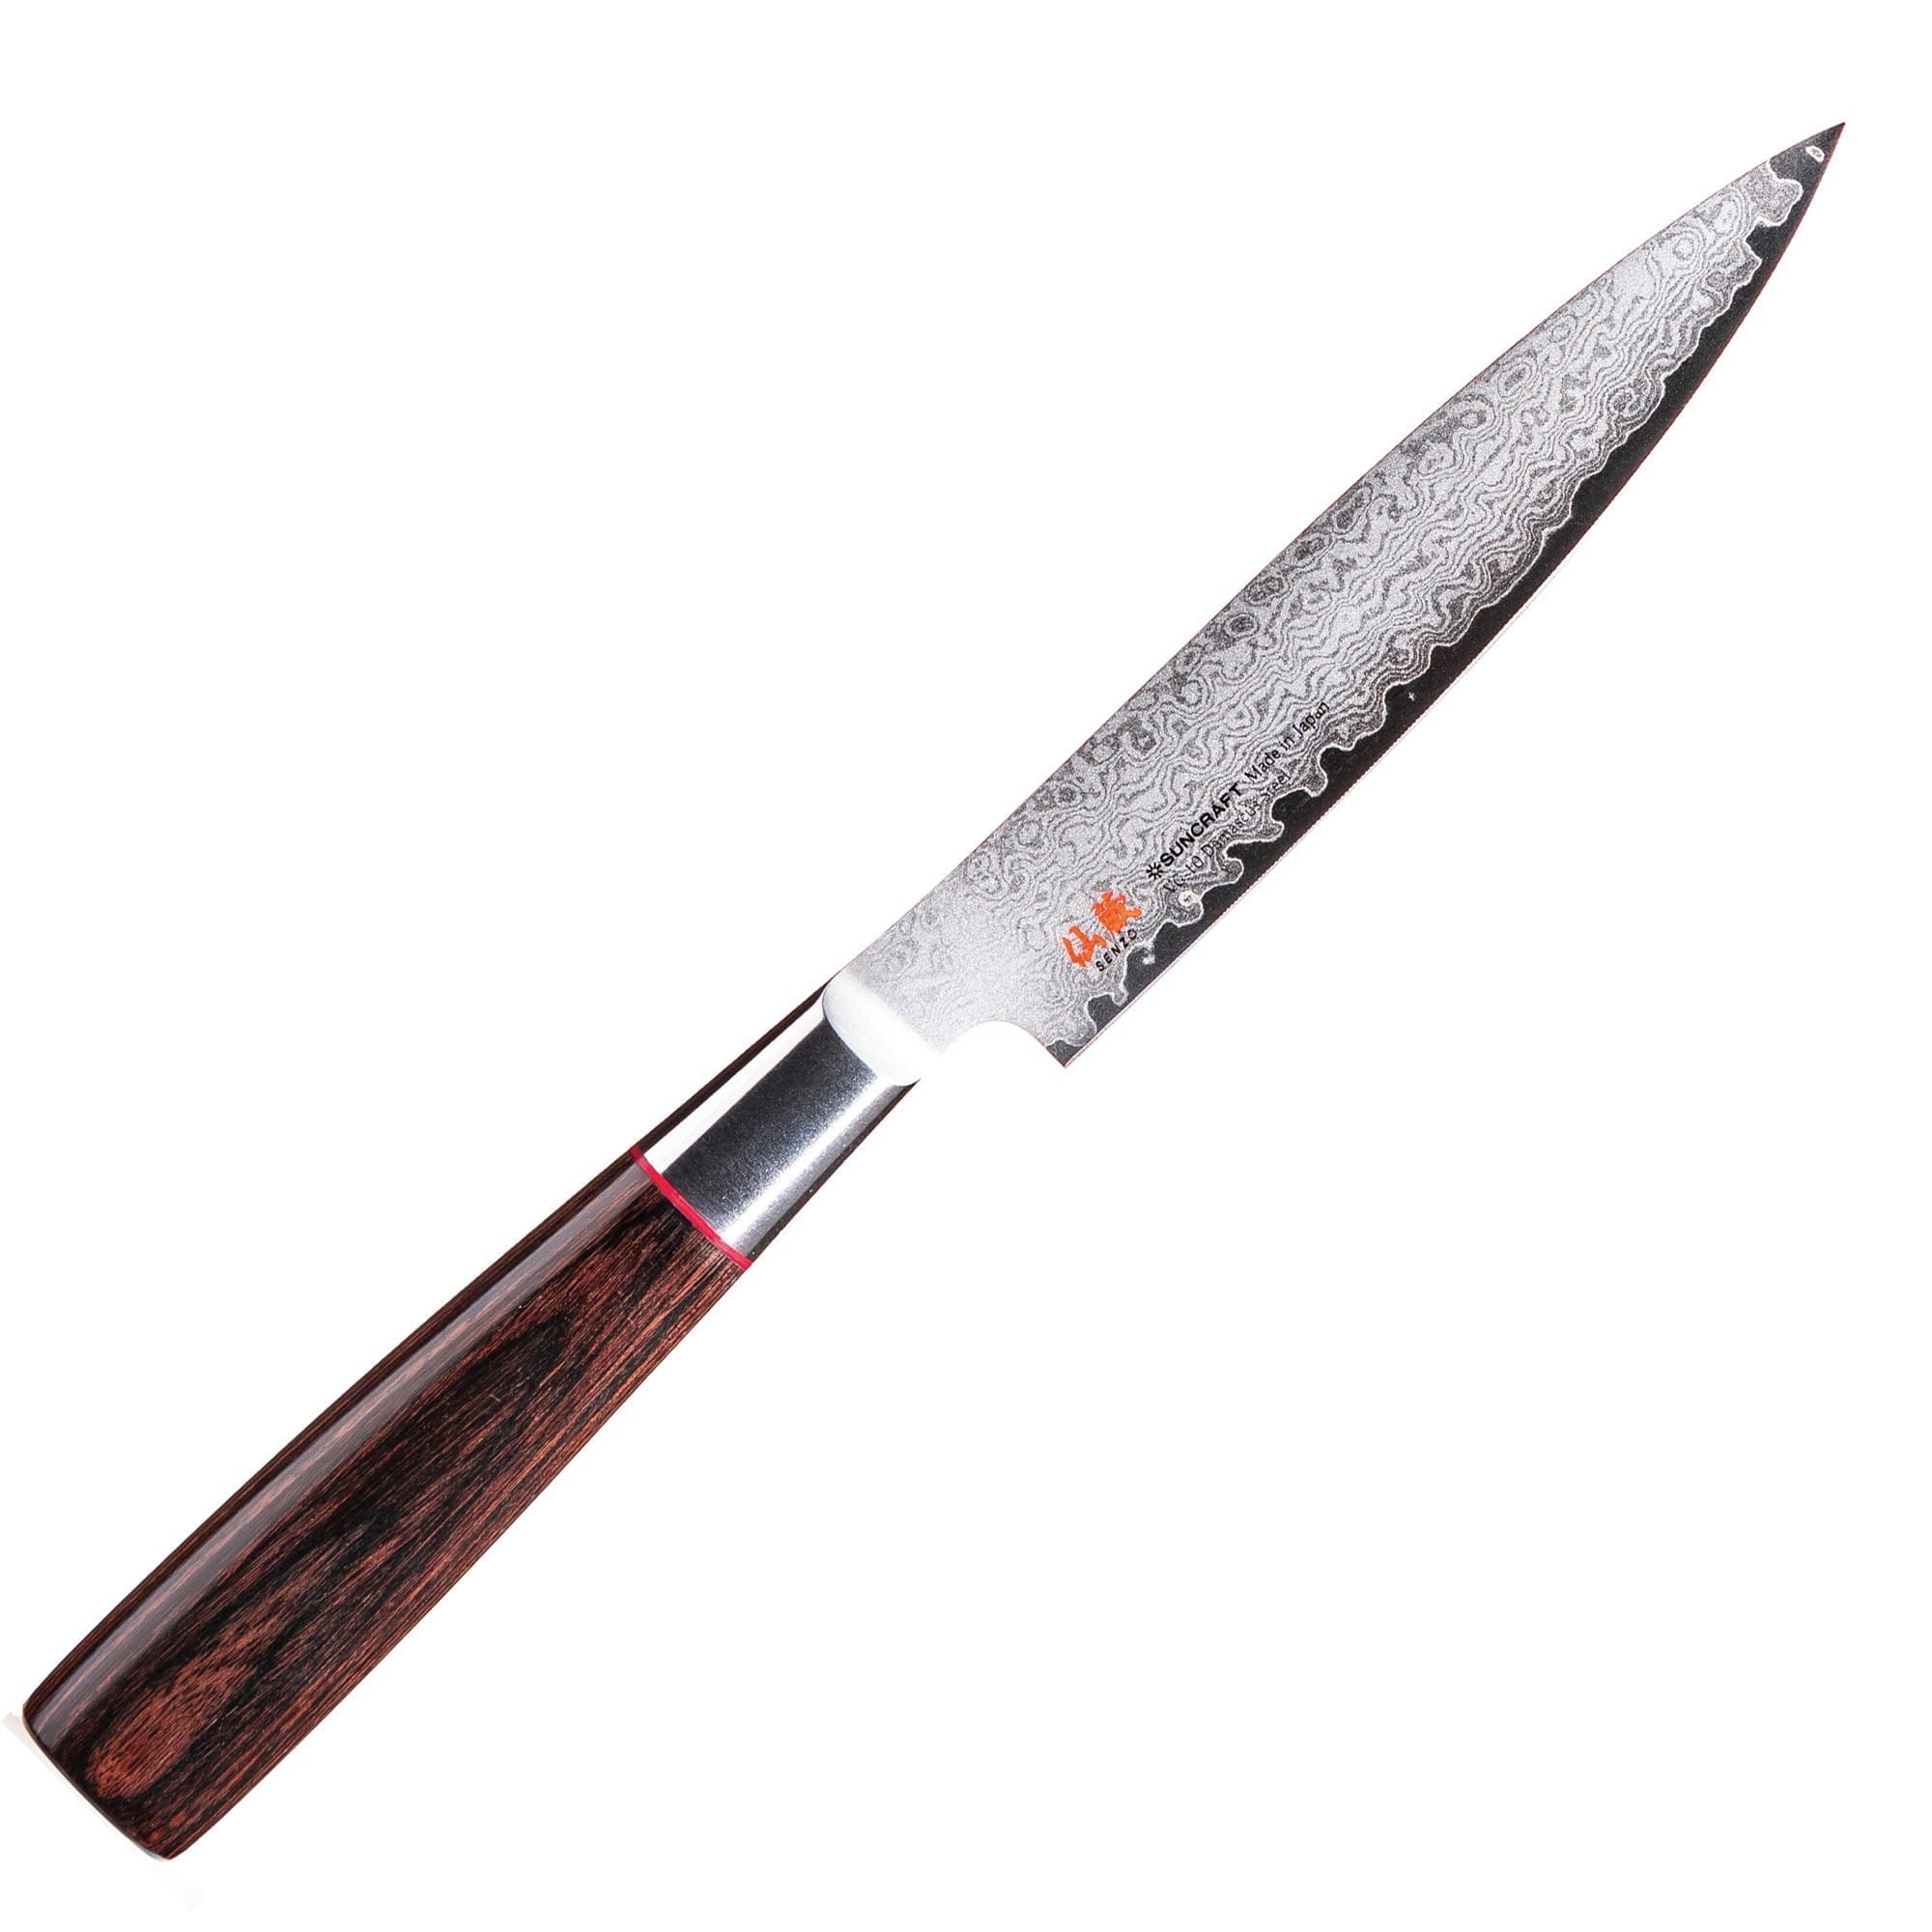 Senzo Classic Id 12 Universal Knife, 15 Cm